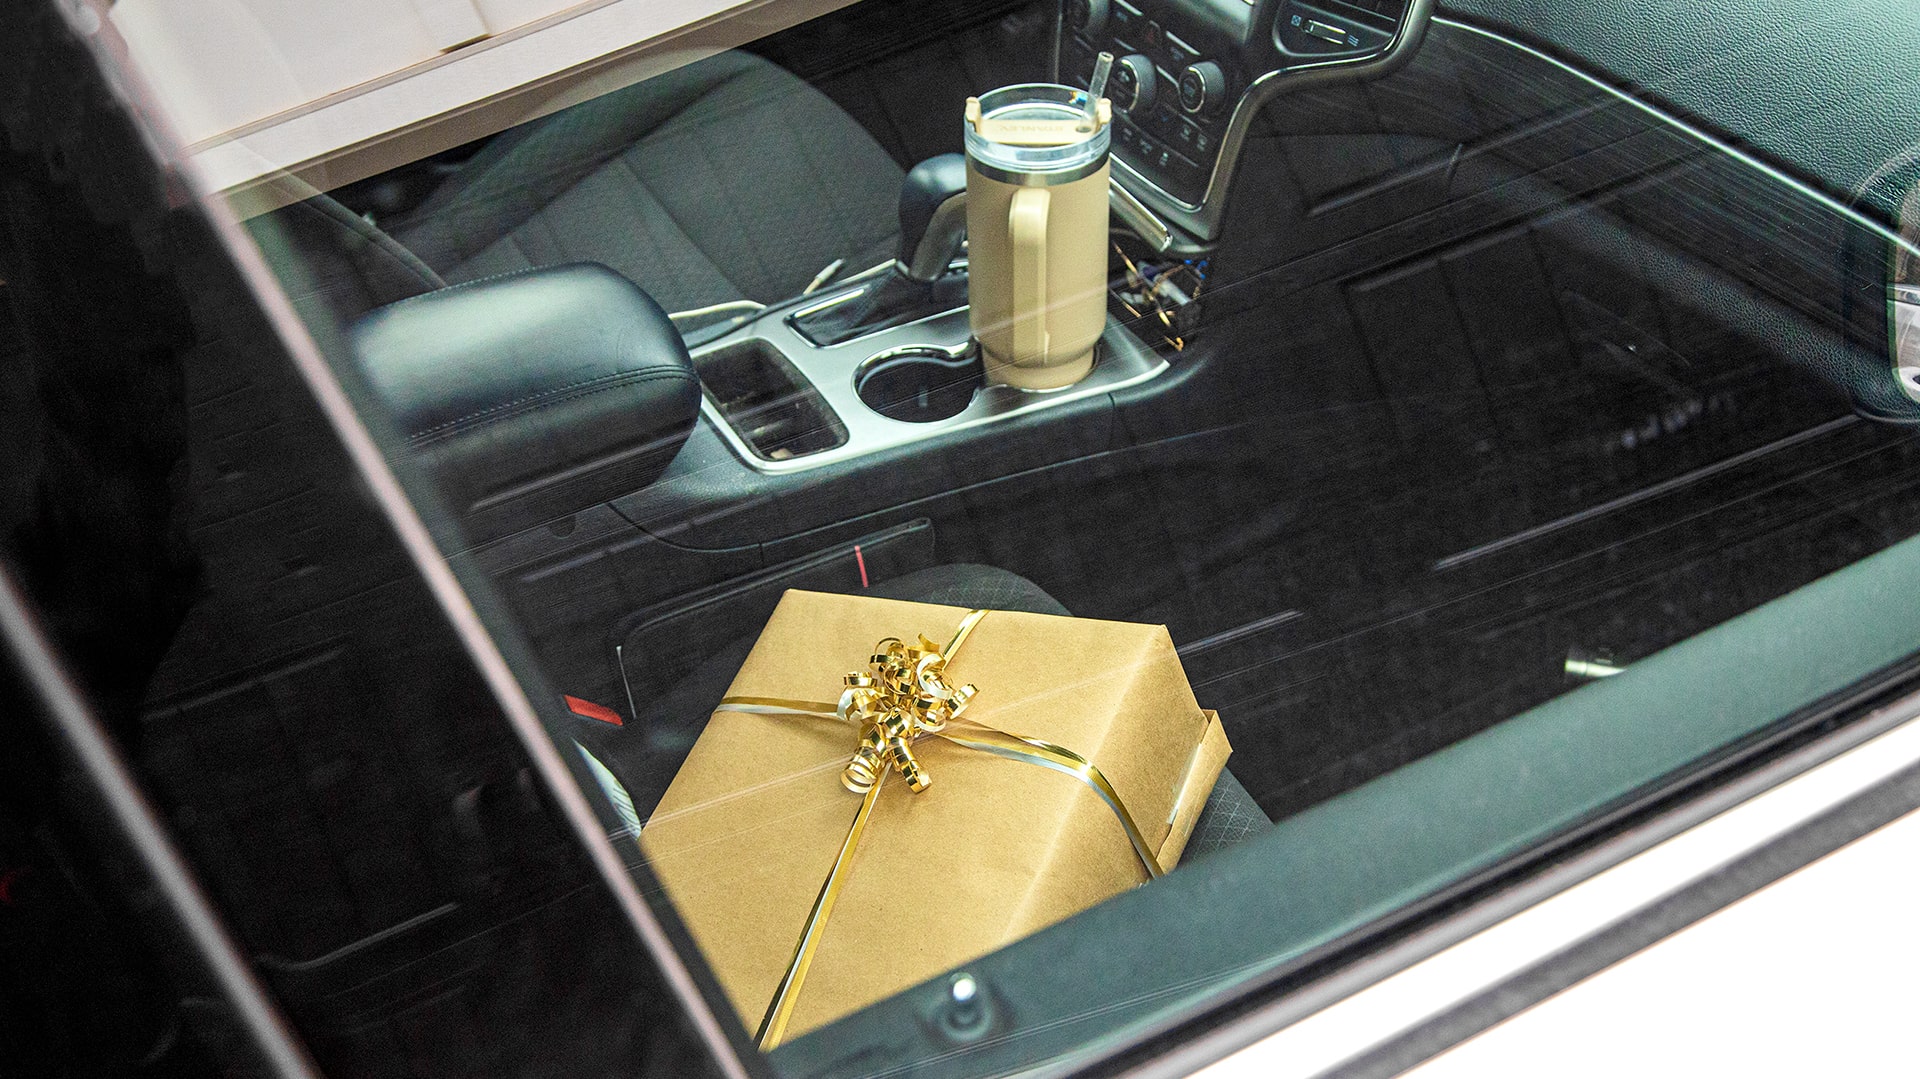 Present in car